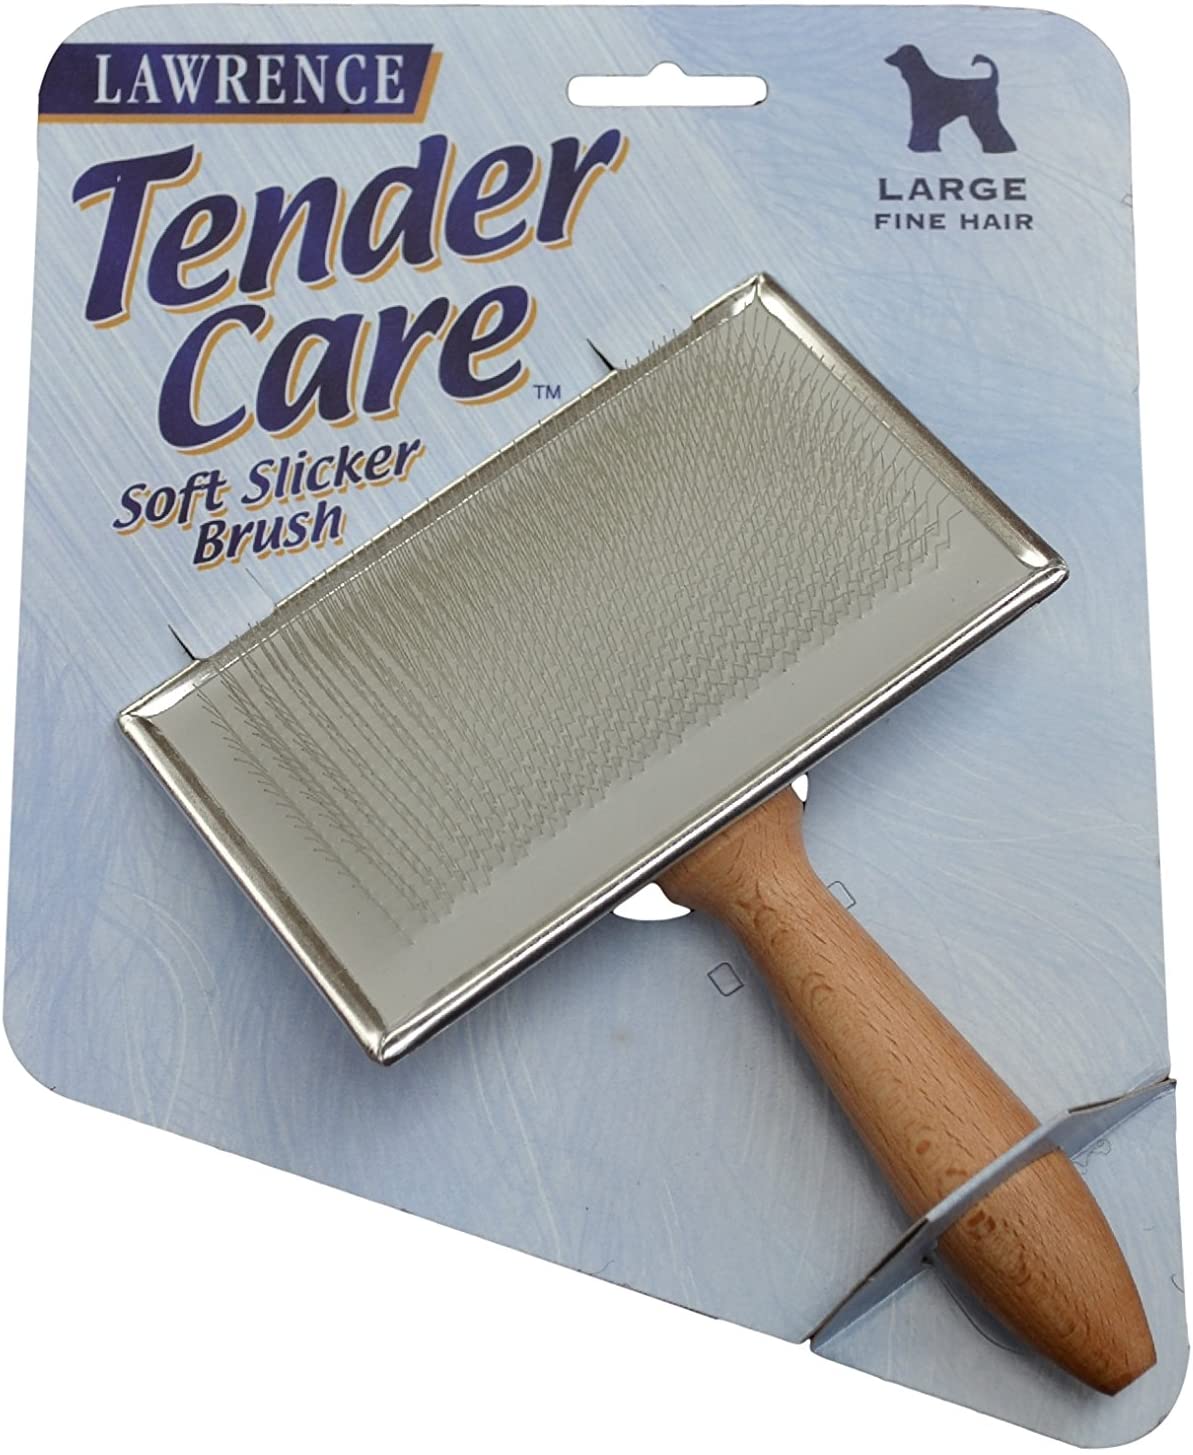  LAWRENCE Tender Care Slicker Brush, Grande 